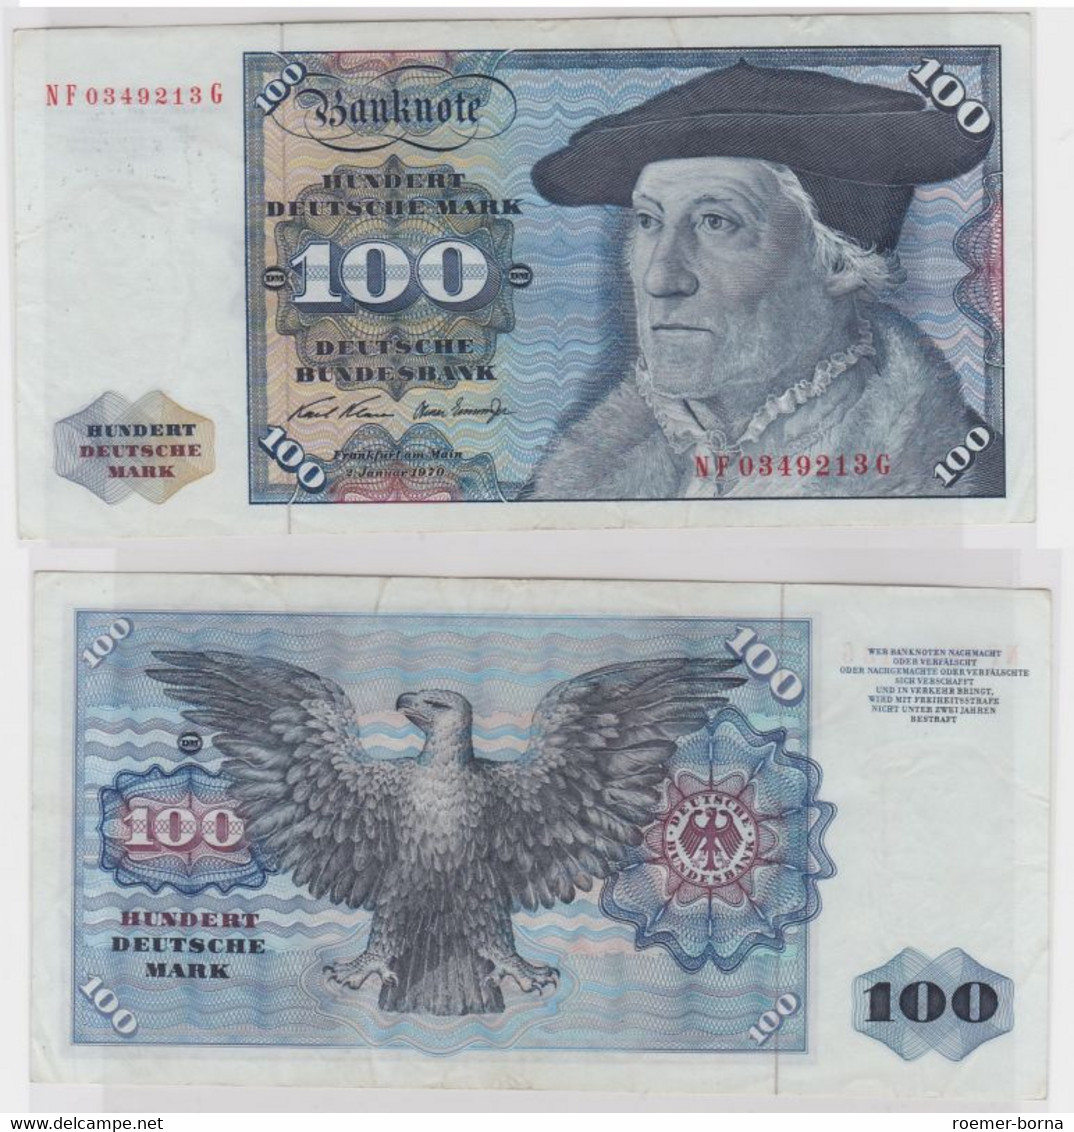 T146010 Banknote 100 DM Deutsche Mark Ro. 273b Schein 2.Jan 1970 KN NF 0349213 G - 100 DM